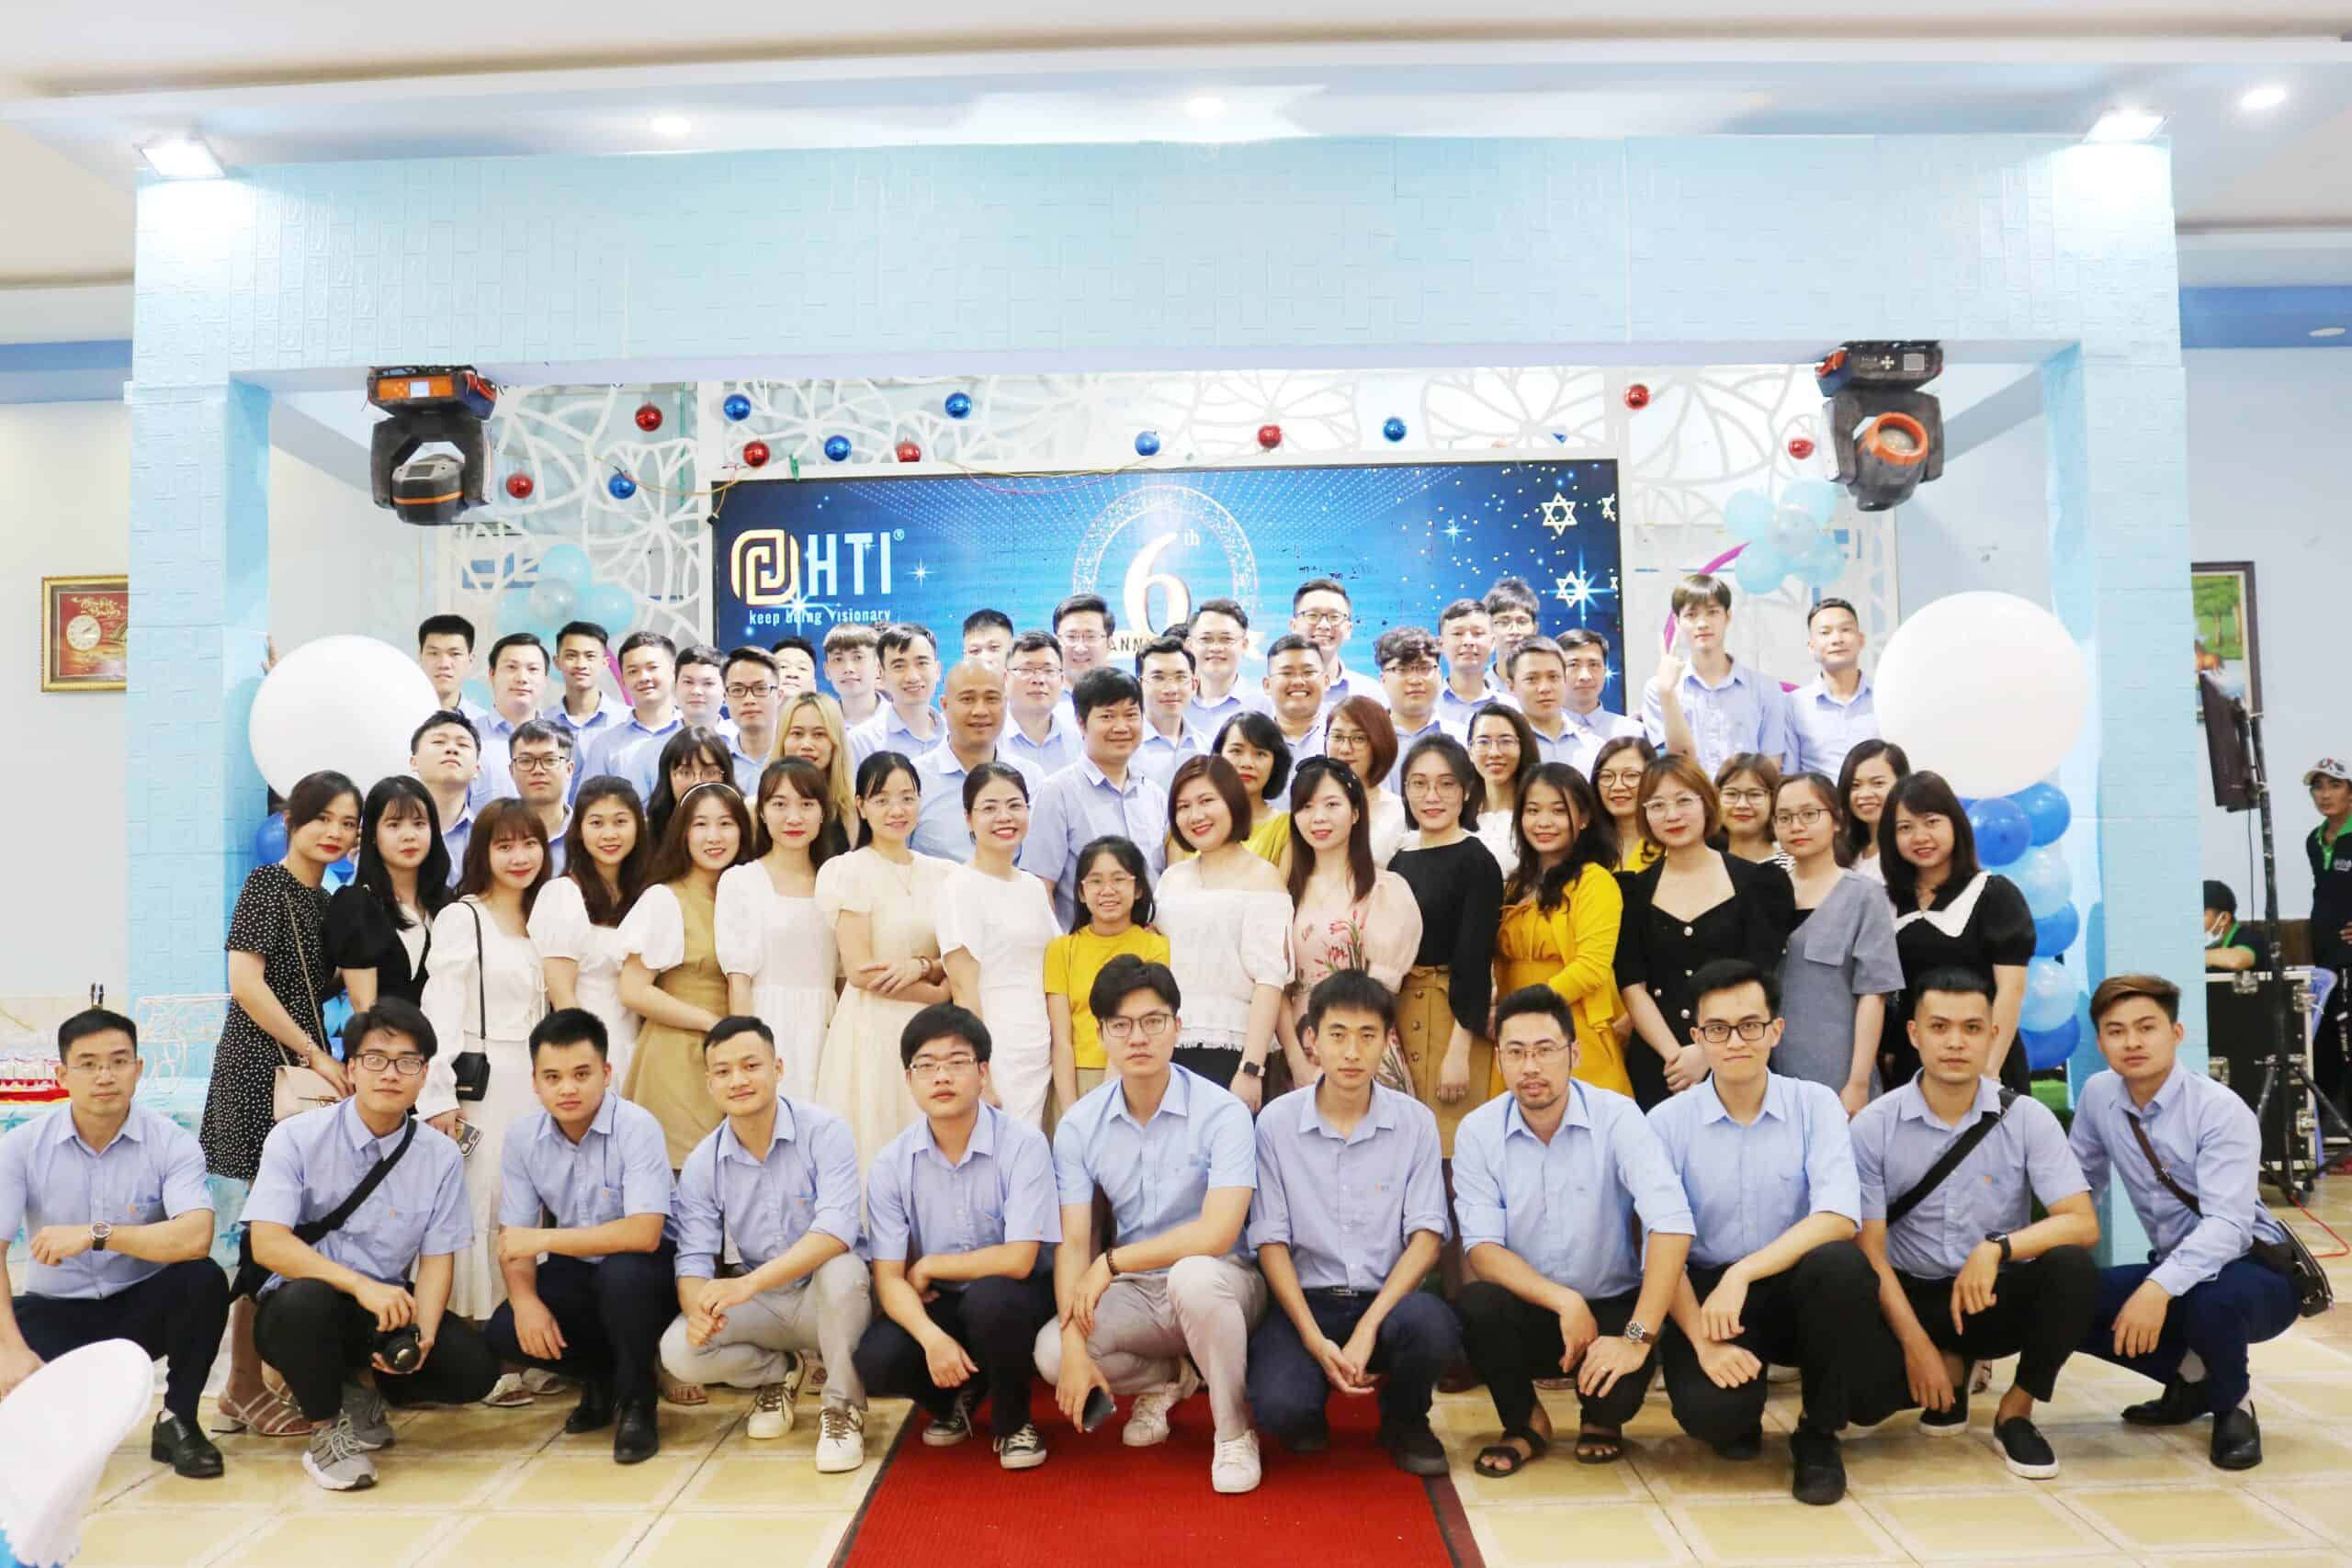 Chúc mừng lễ kỷ niệm 6 năm thành lập HTI Group (13/4/2016 – 13/4/2022)